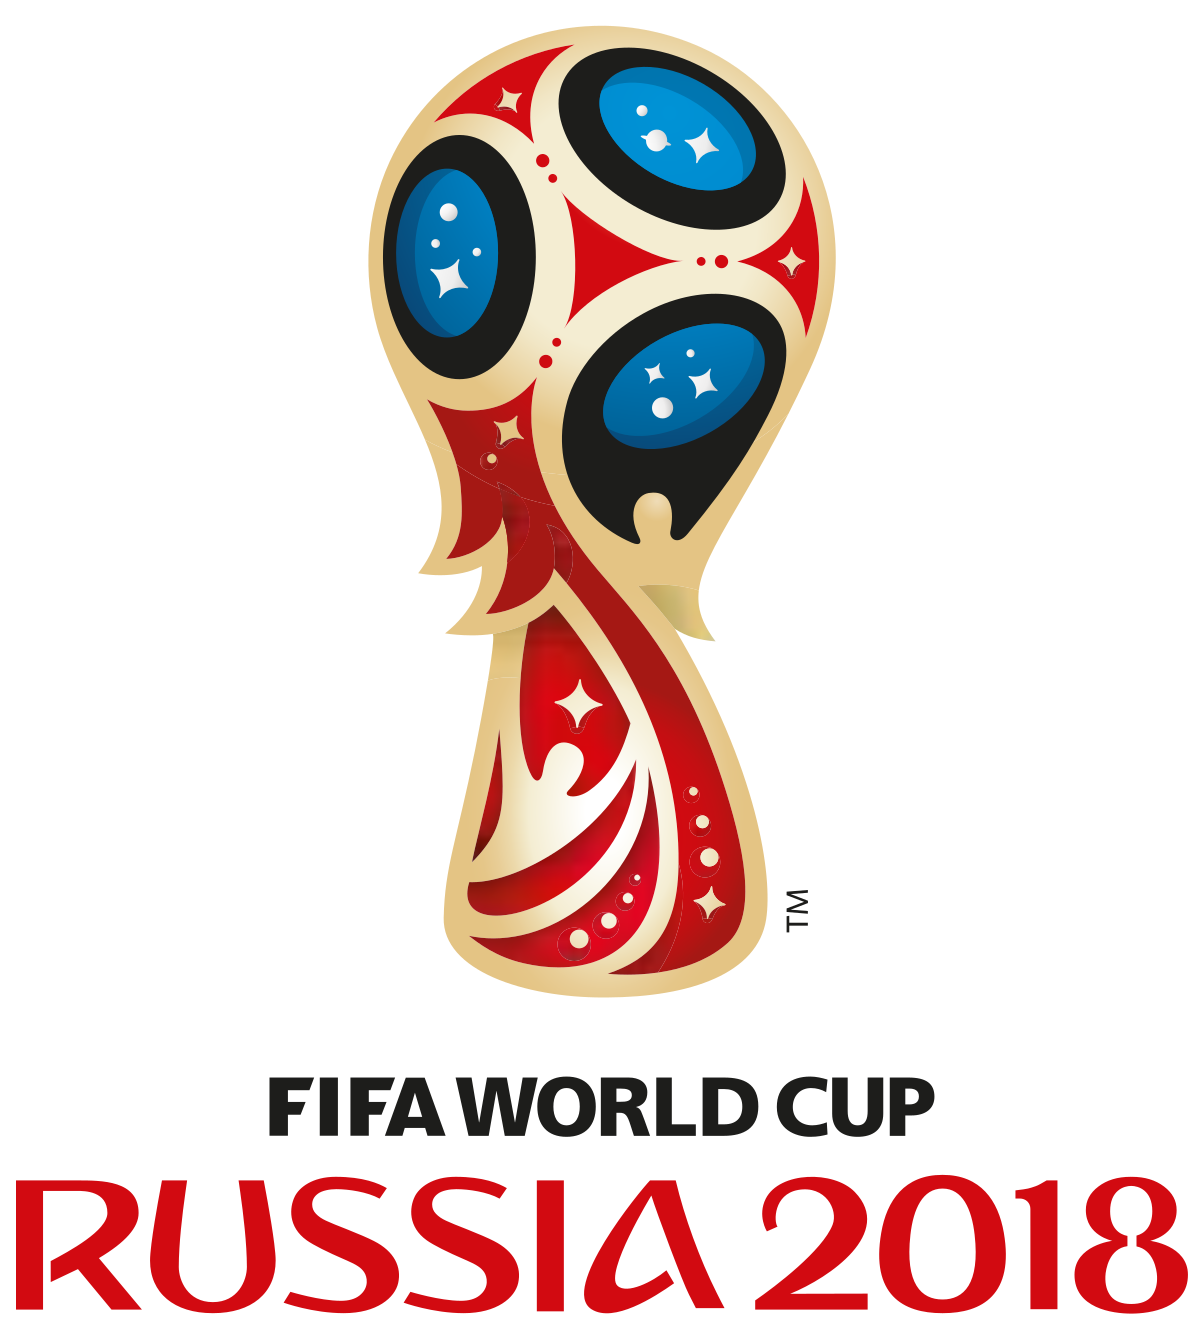 صور شعار كاس العالم 2018 عالم الصور